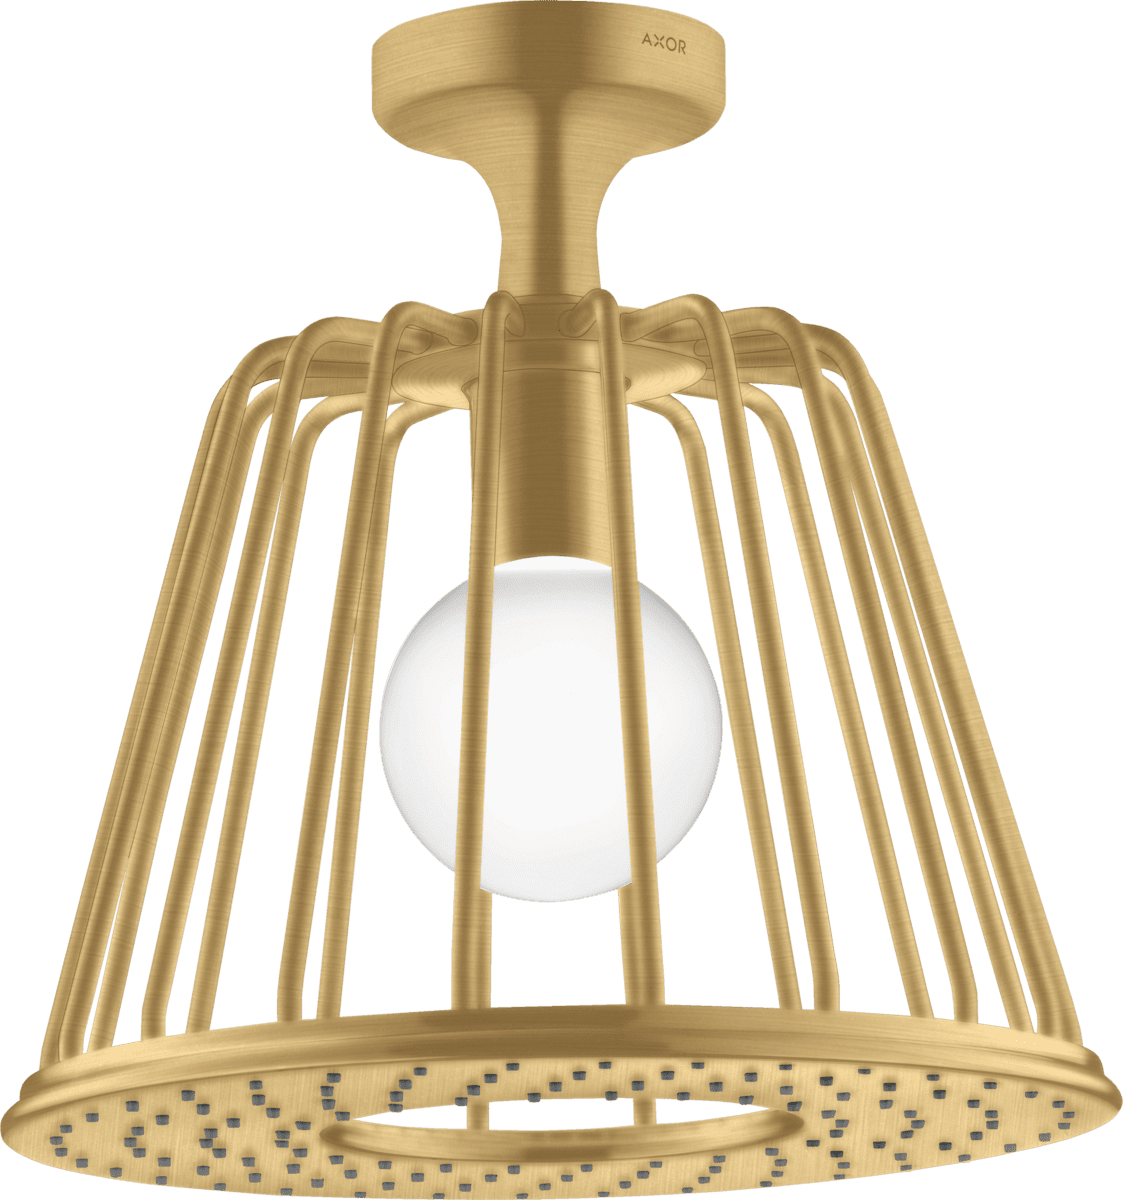 HANSGROHE AXOR LampShower/Nendo LampShower 275 1jet tavan bağlantılı #26032250 - Mat Altın Optik resmi